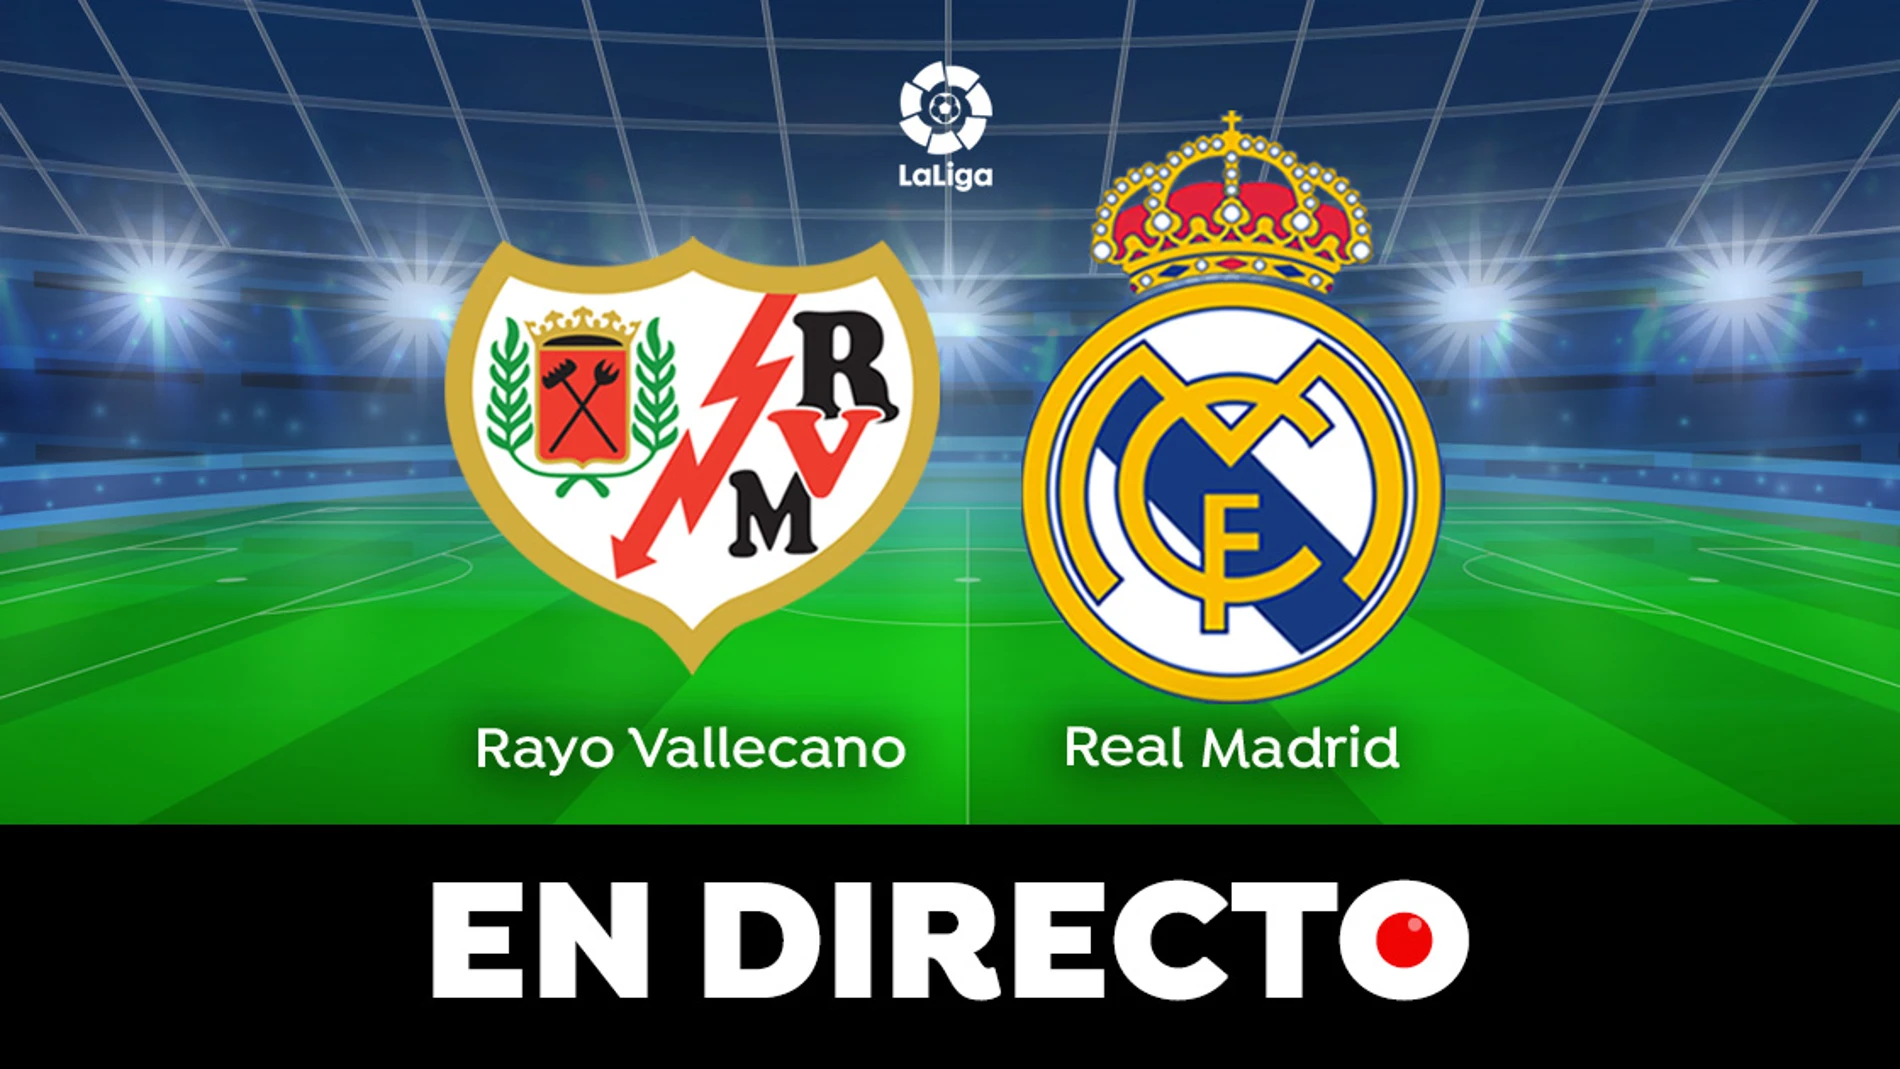 Rayo Vallecano - Real Madrid: partido de hoy de LaLiga, en directo